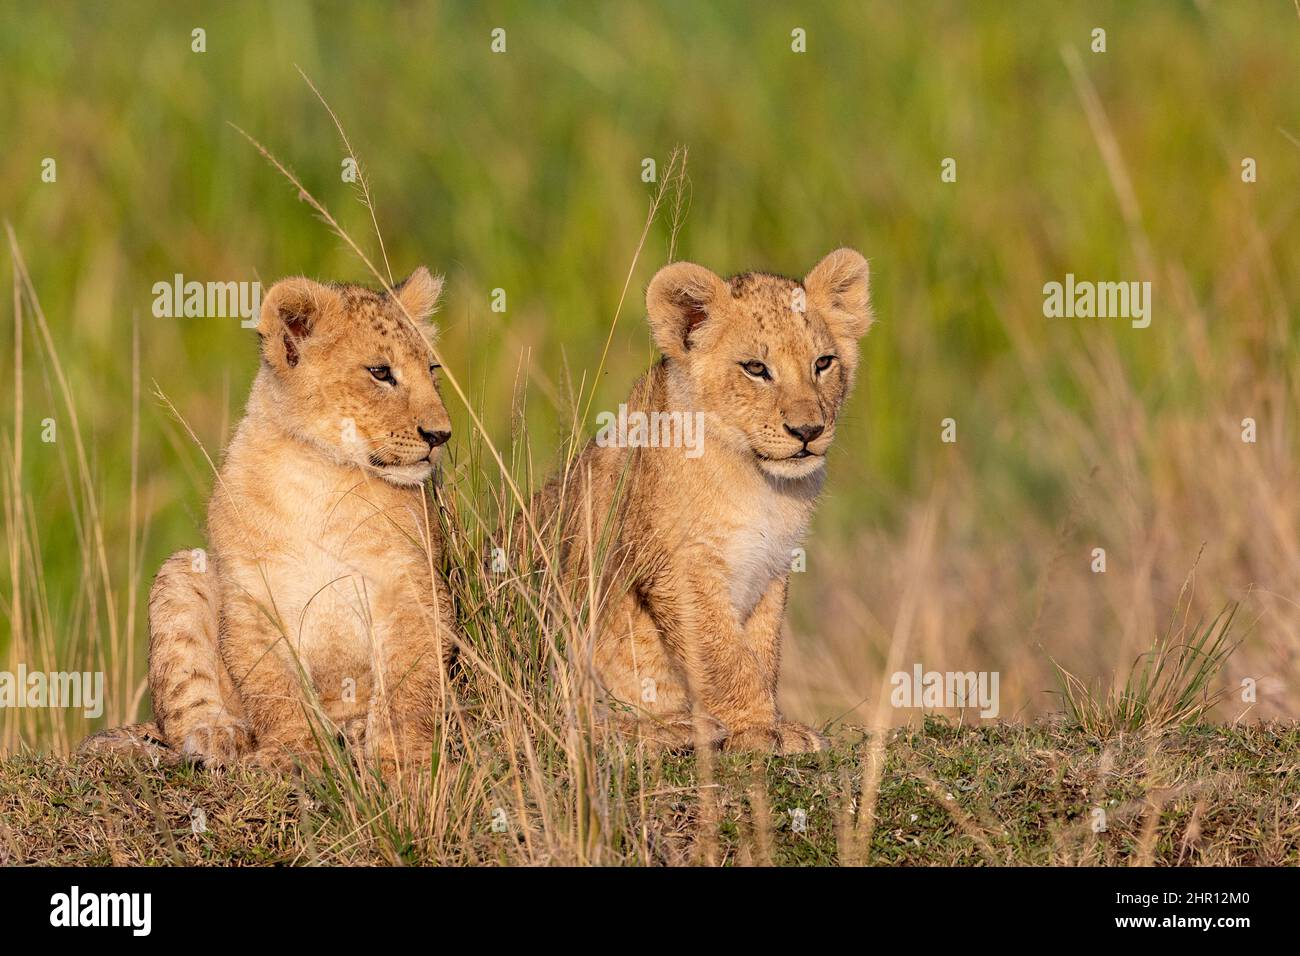 Lion (Panthera leo) cubs playing in savanna, Masai Mara National Reserve, National Park, Kenya Stock Photo